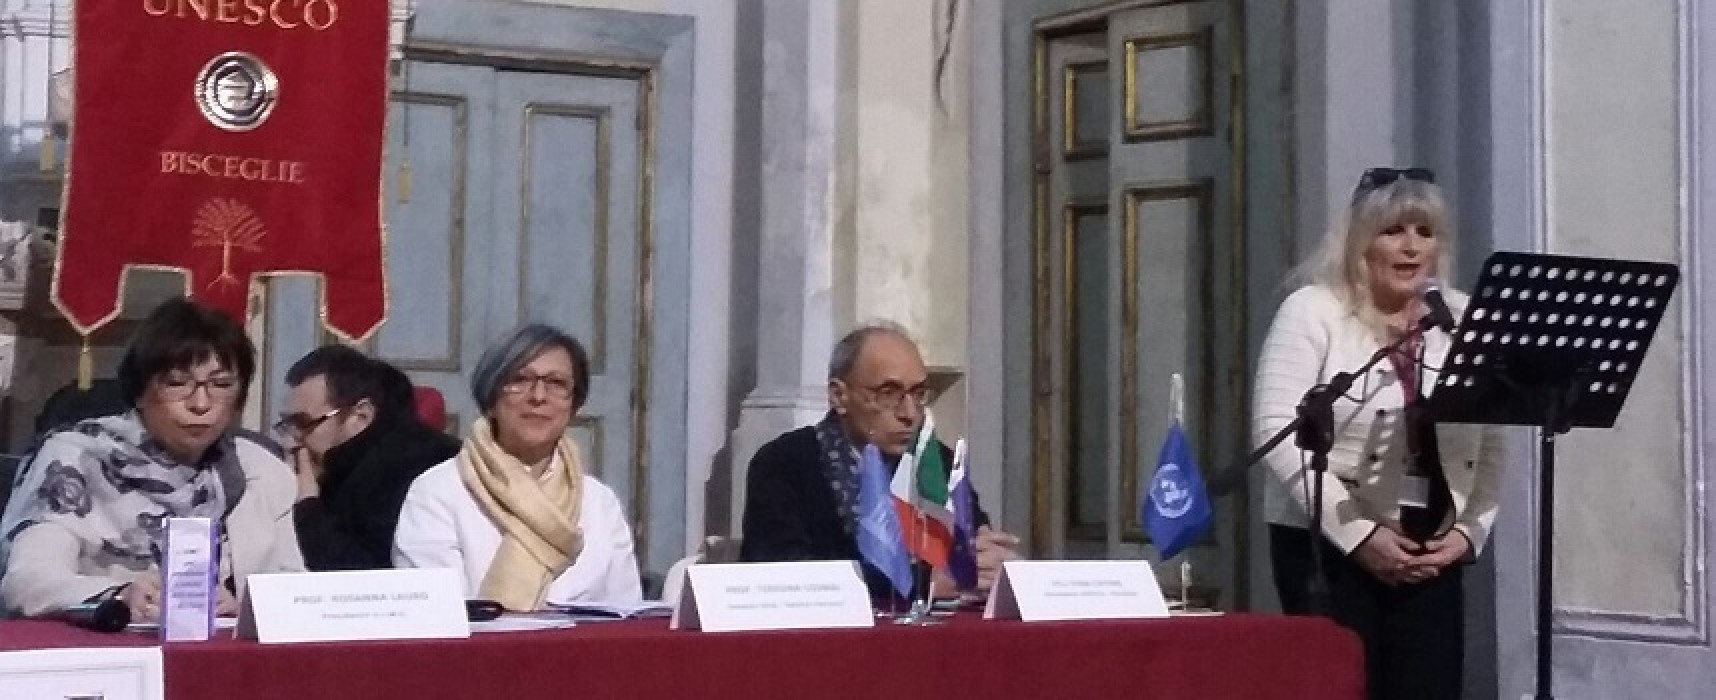 Unesco Bisceglie, Pinuccio Rana nominato socio onorario